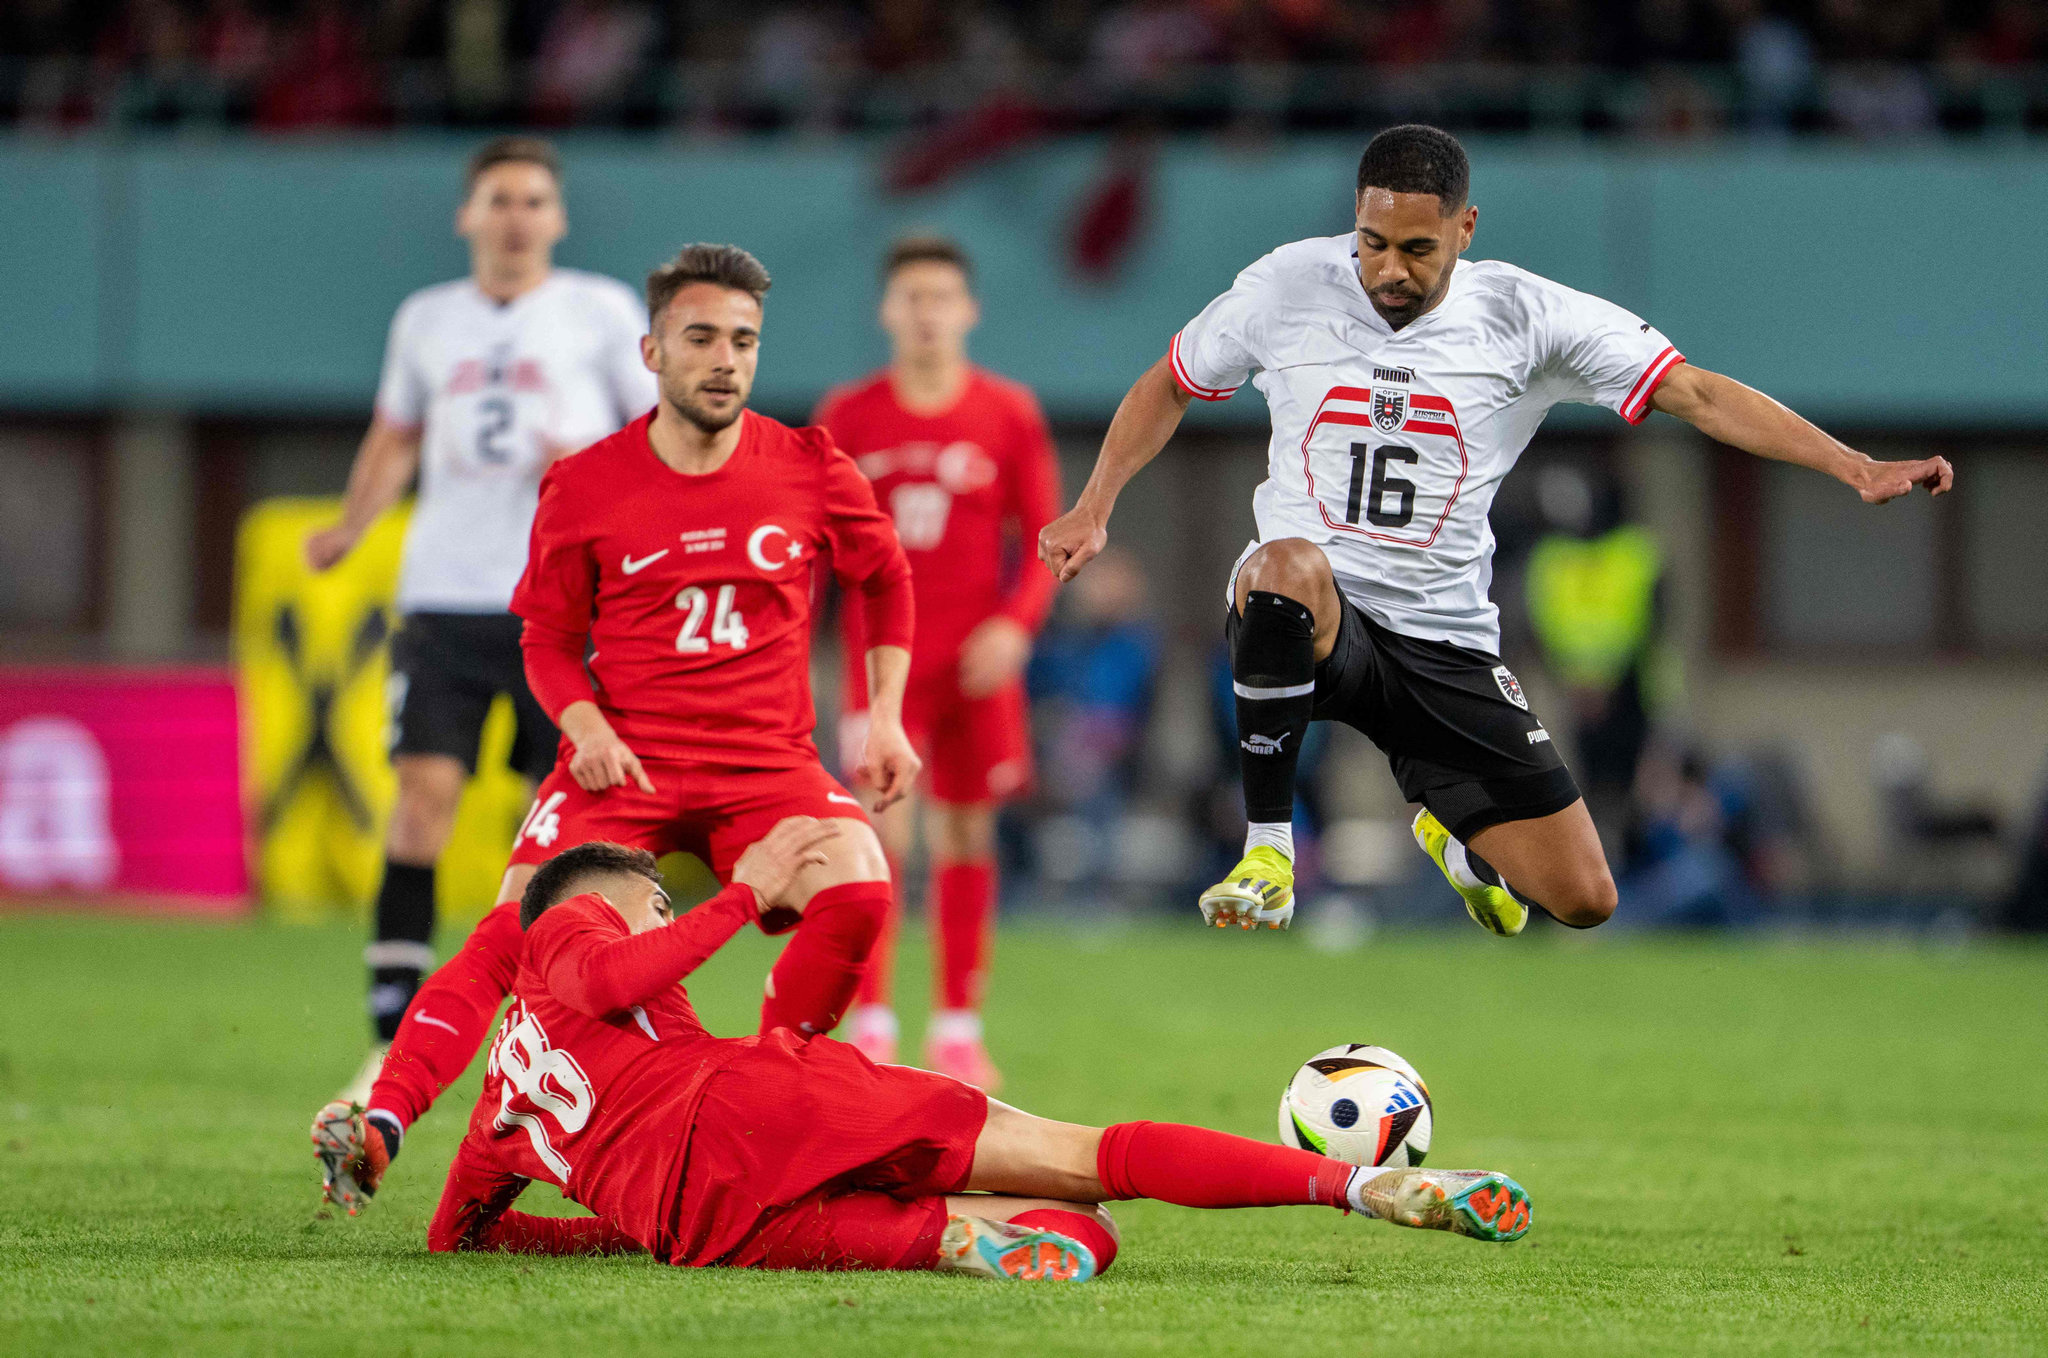 Avusturya Türkiye maçı sonrası milli takıma flaş eleştiri! Atanı da yok tunanı da yok